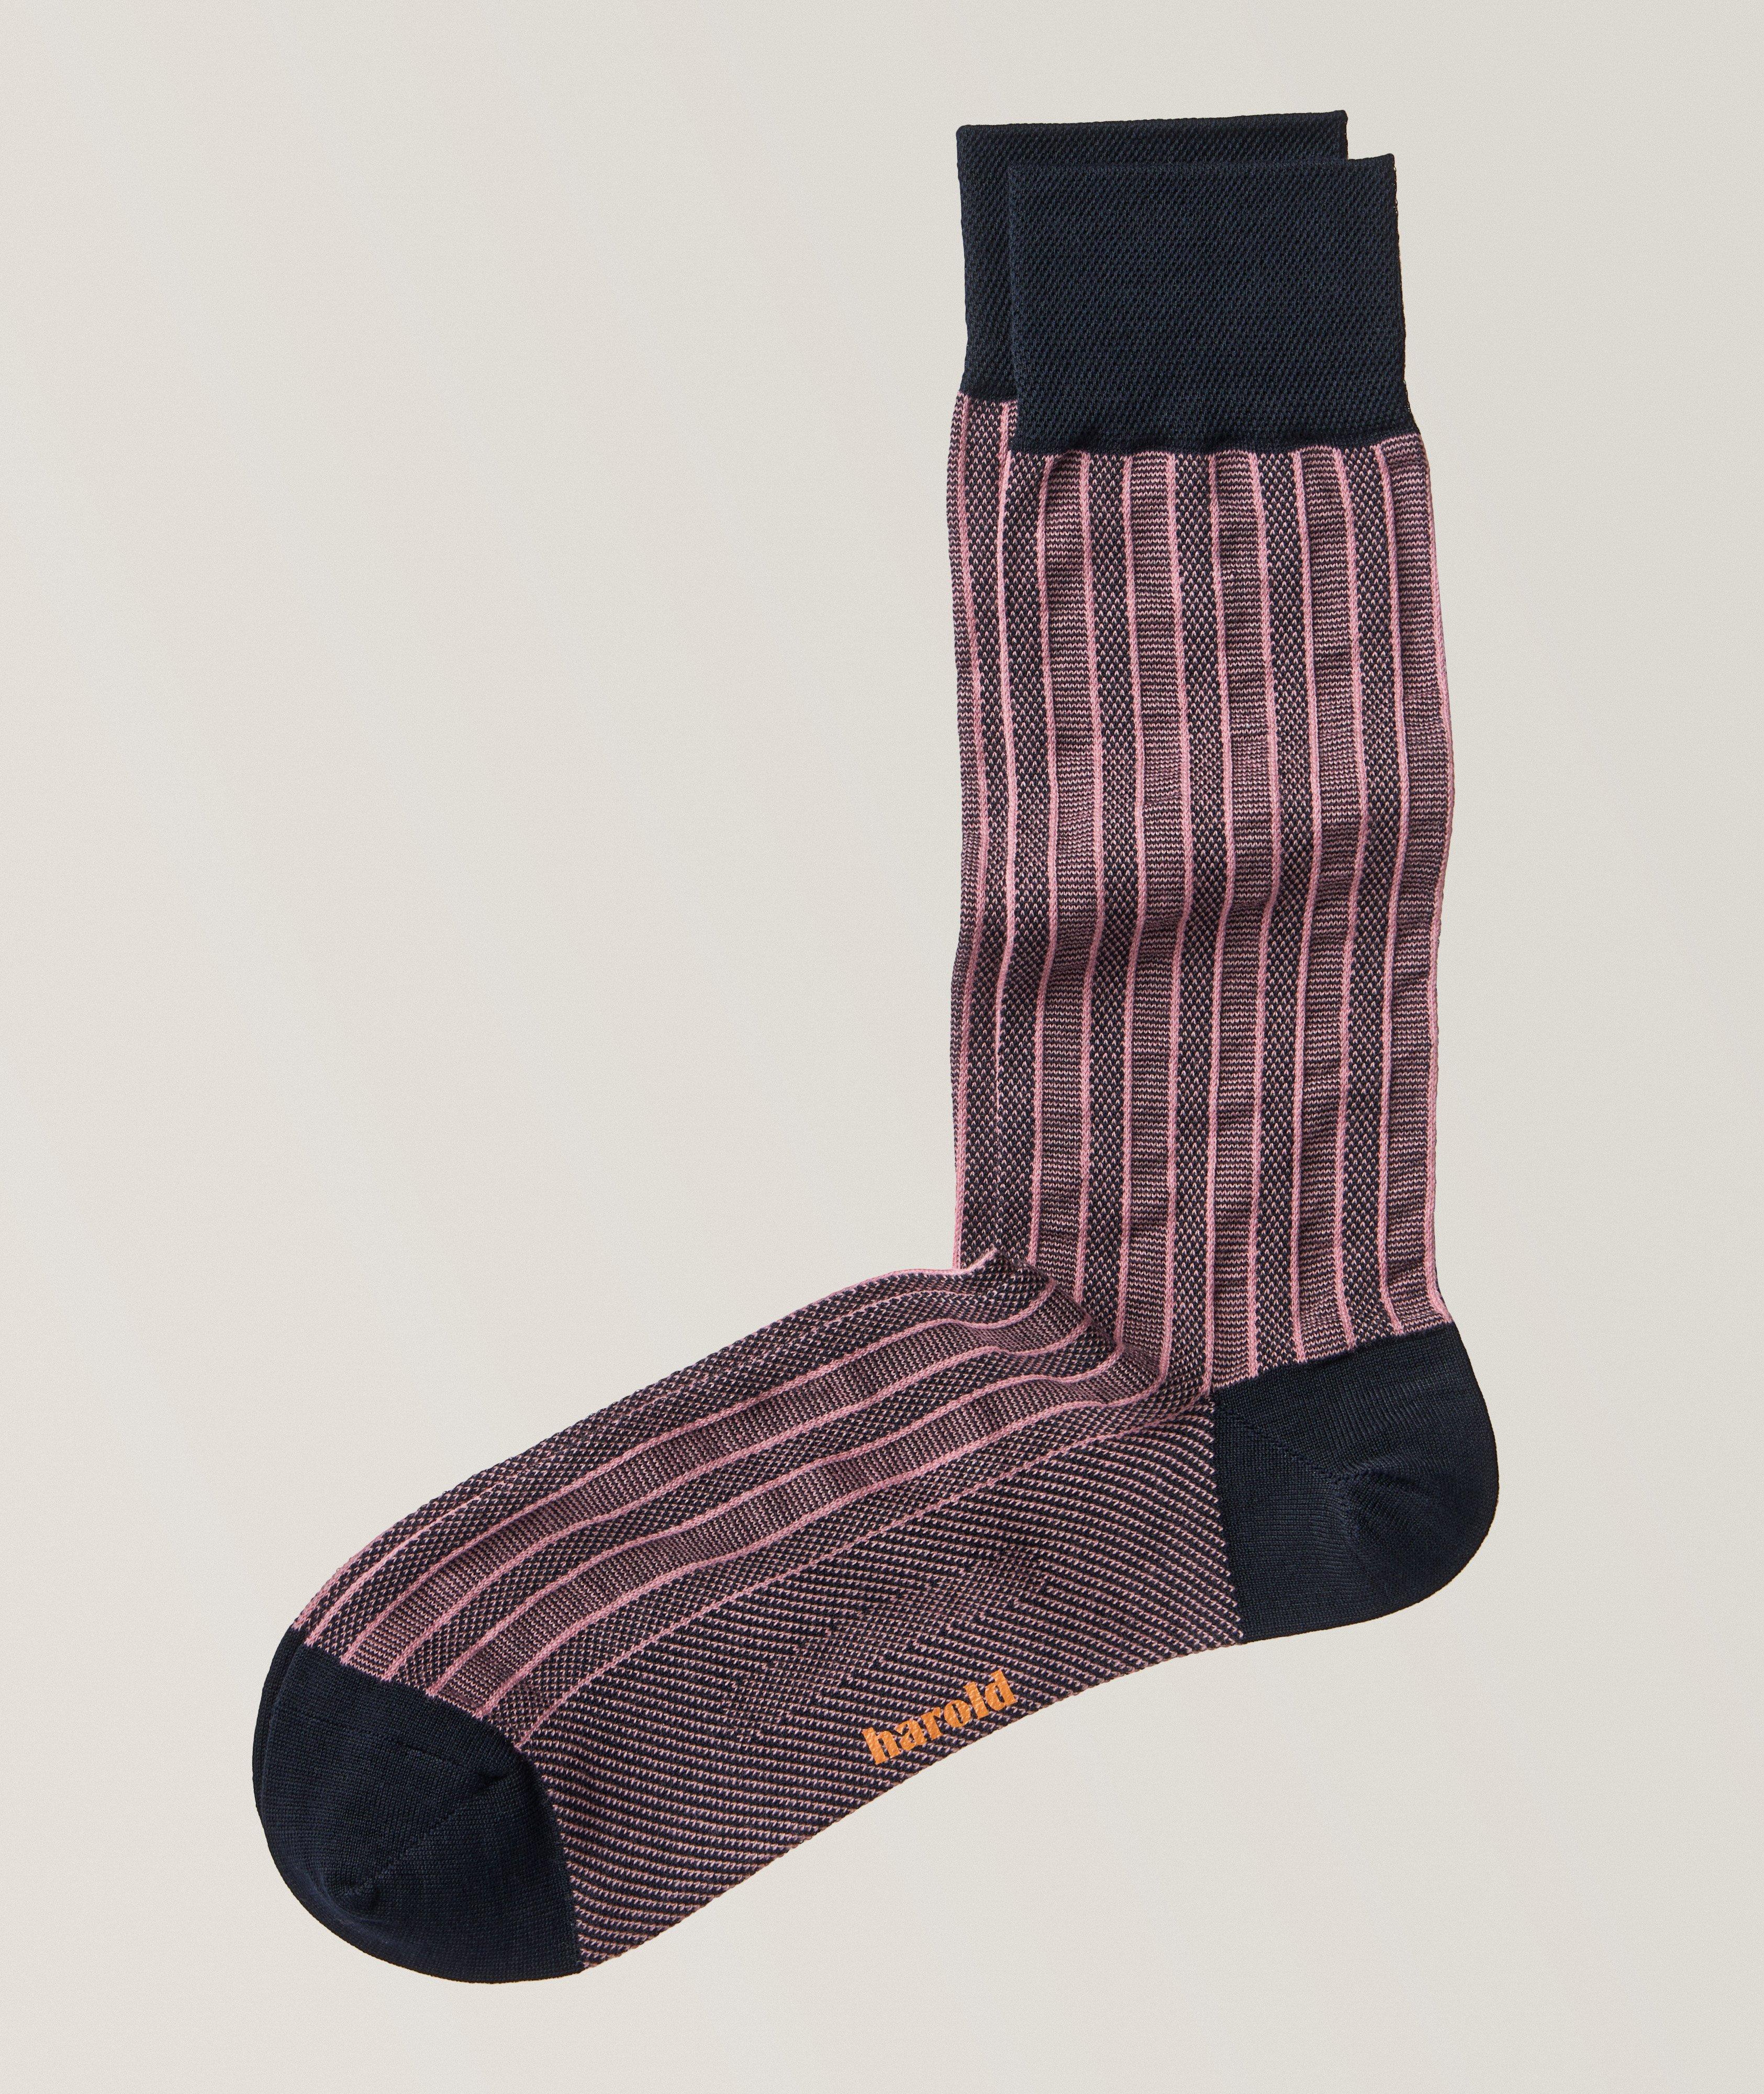 Tonal Striped Mercerized Cotton Ribbed Dress Socks   image 0